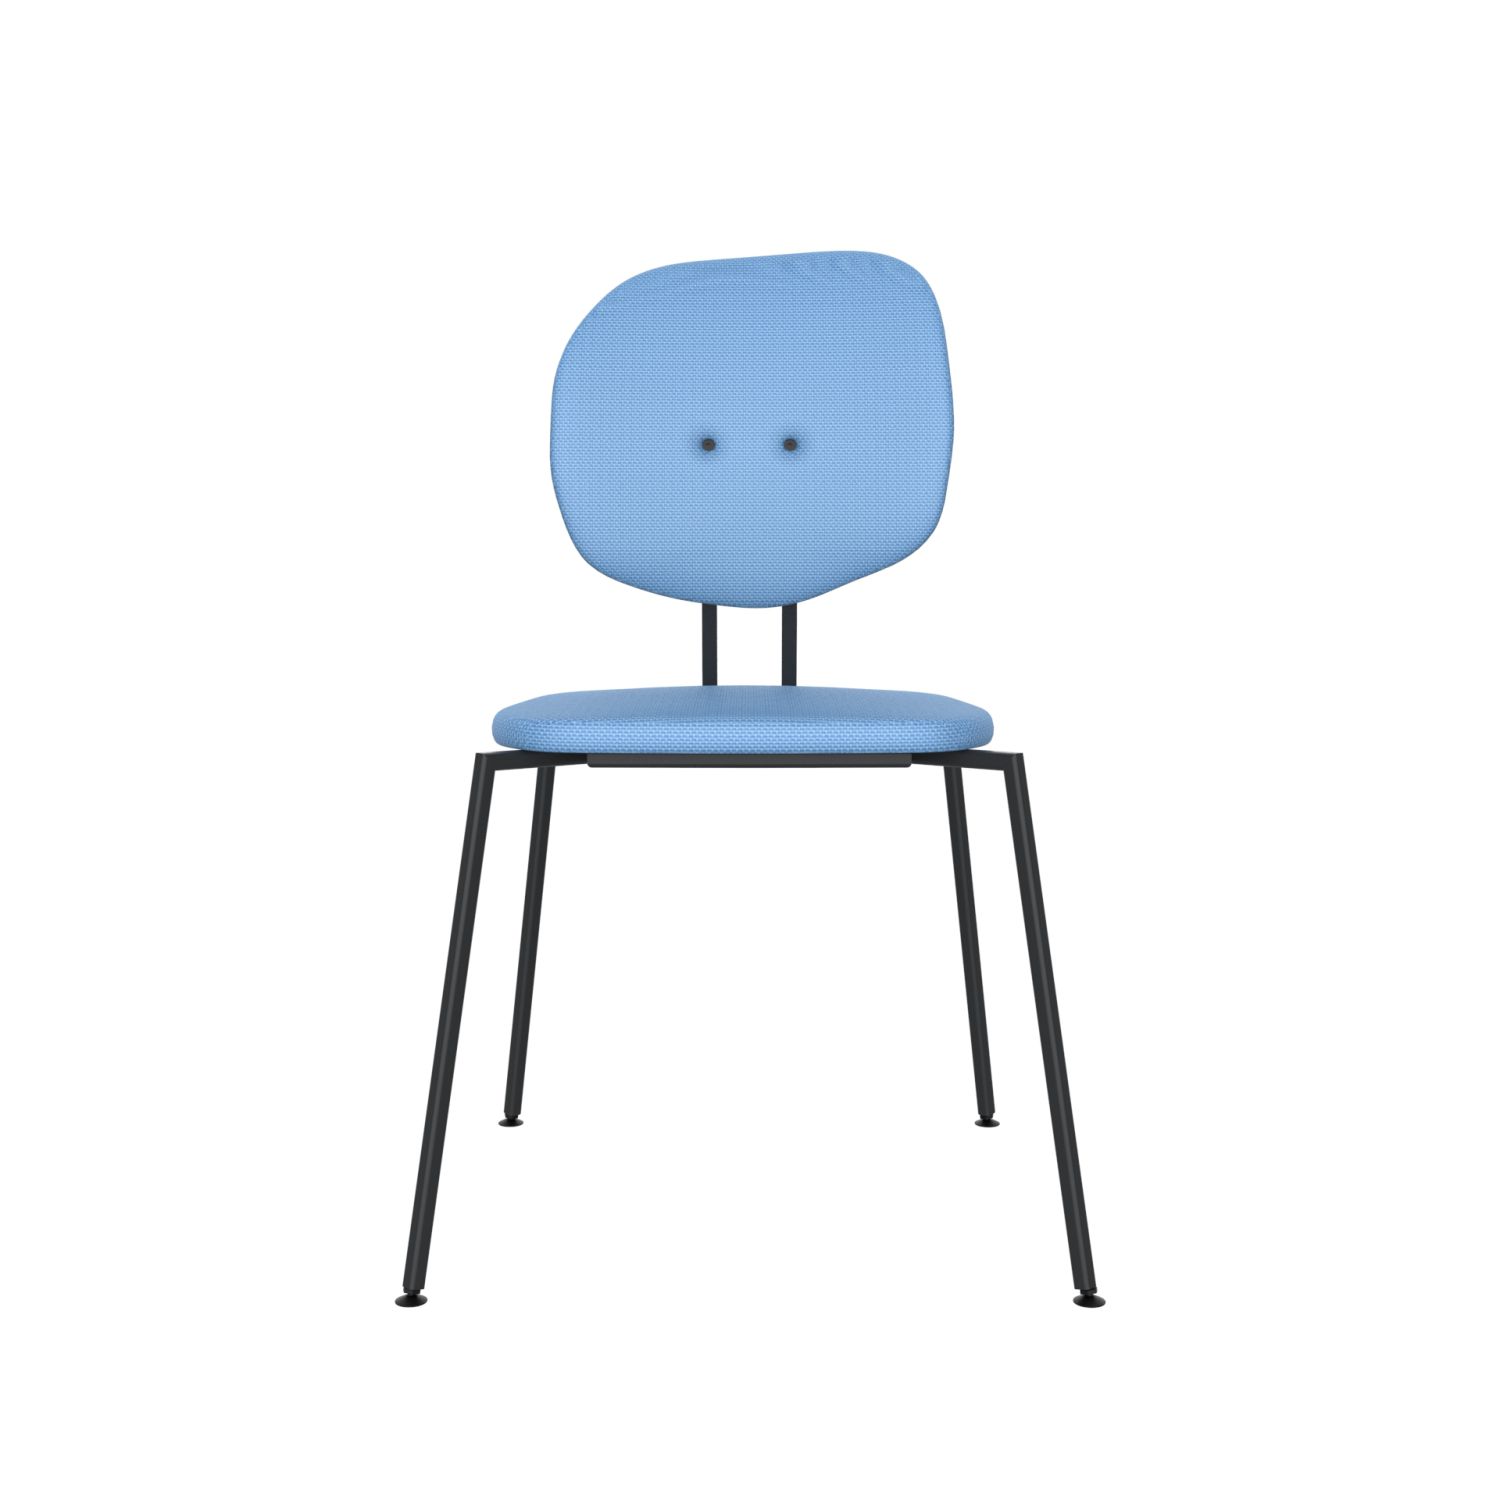 lensvelt maarten baas chair 141 stackable without armrests backrest h blue horizon 040 black ral9005 hard leg ends